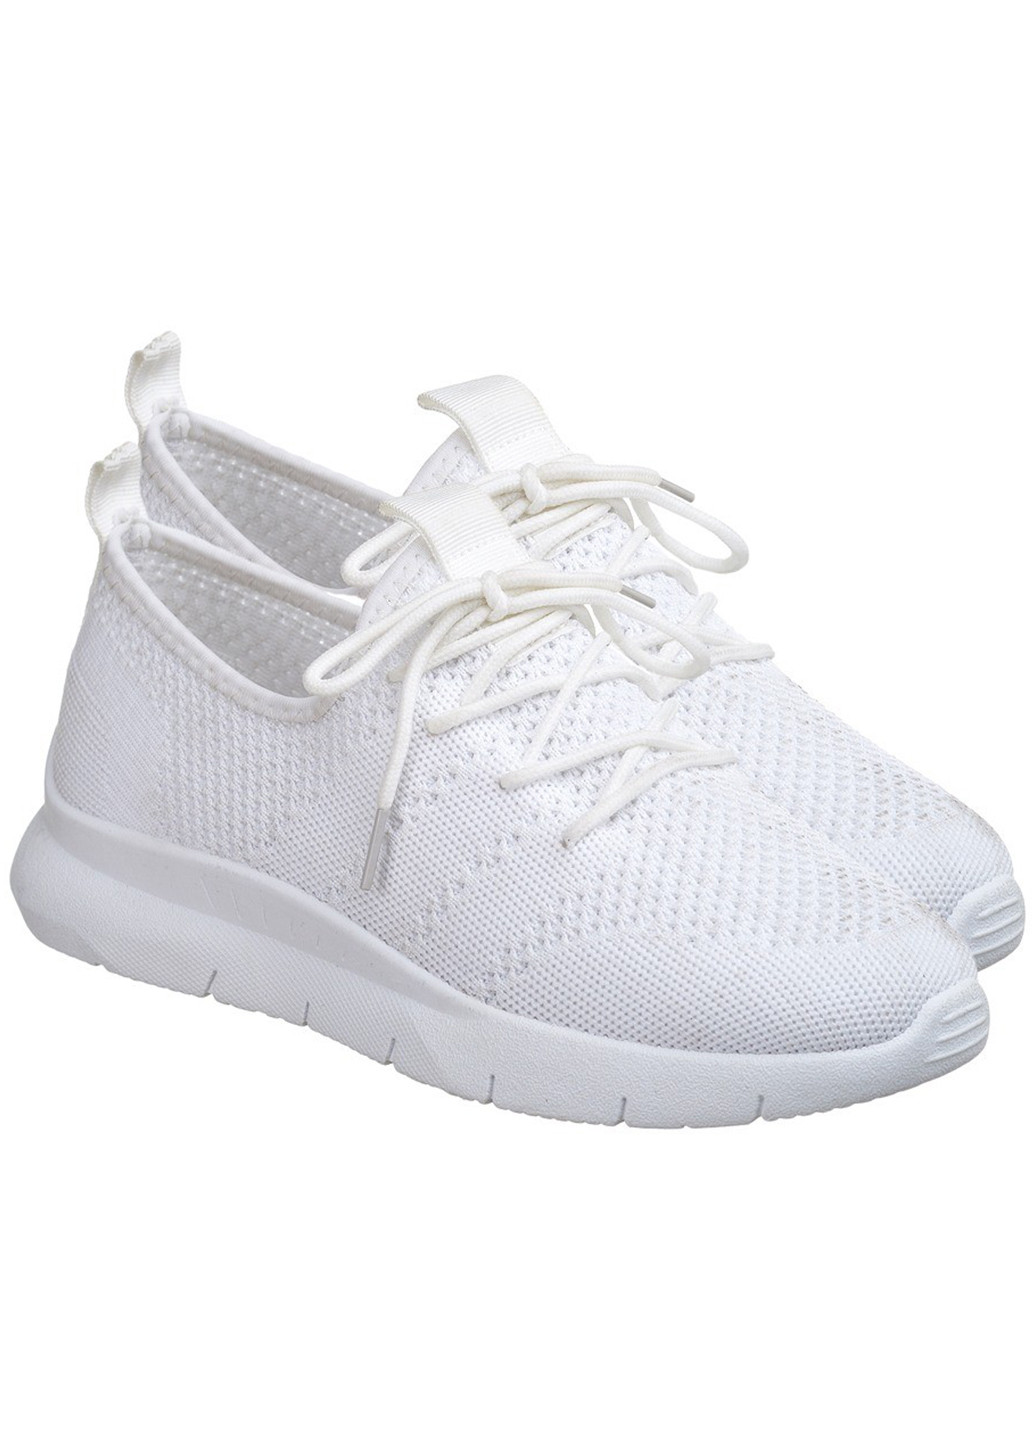 Білі осінні кросівки жіночі літні з текстилю білі 1427052371 Gipanis